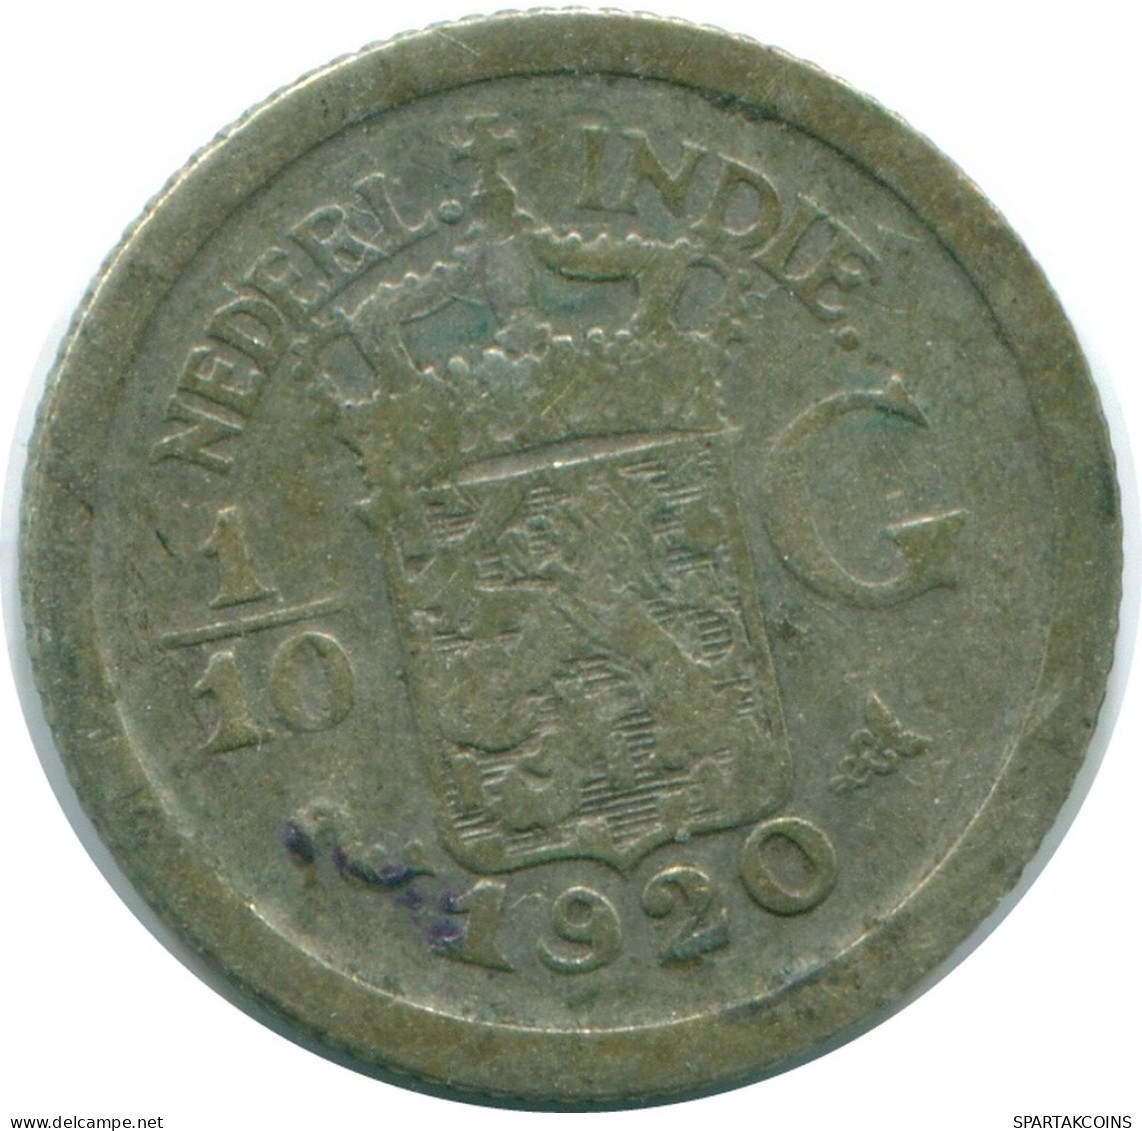 1/10 GULDEN 1920 NIEDERLANDE OSTINDIEN SILBER Koloniale Münze #NL13348.3.D.A - Niederländisch-Indien